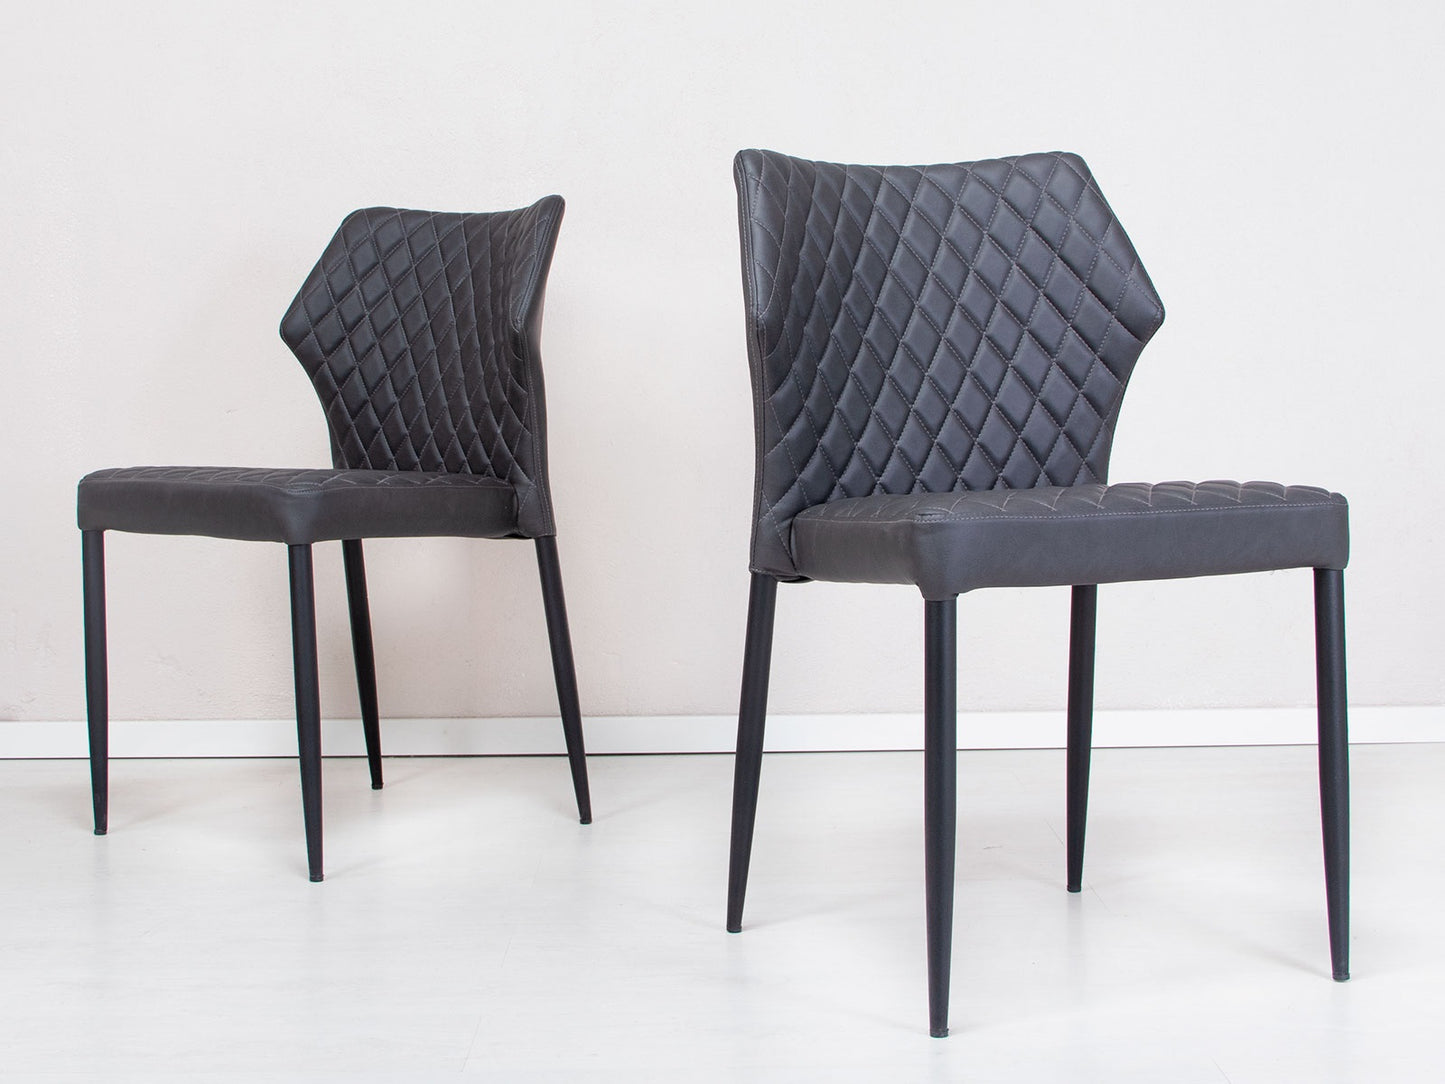 4 stk.  Ydun Spisebordsstole, sort PU sæde/ryg, sort metal ben.